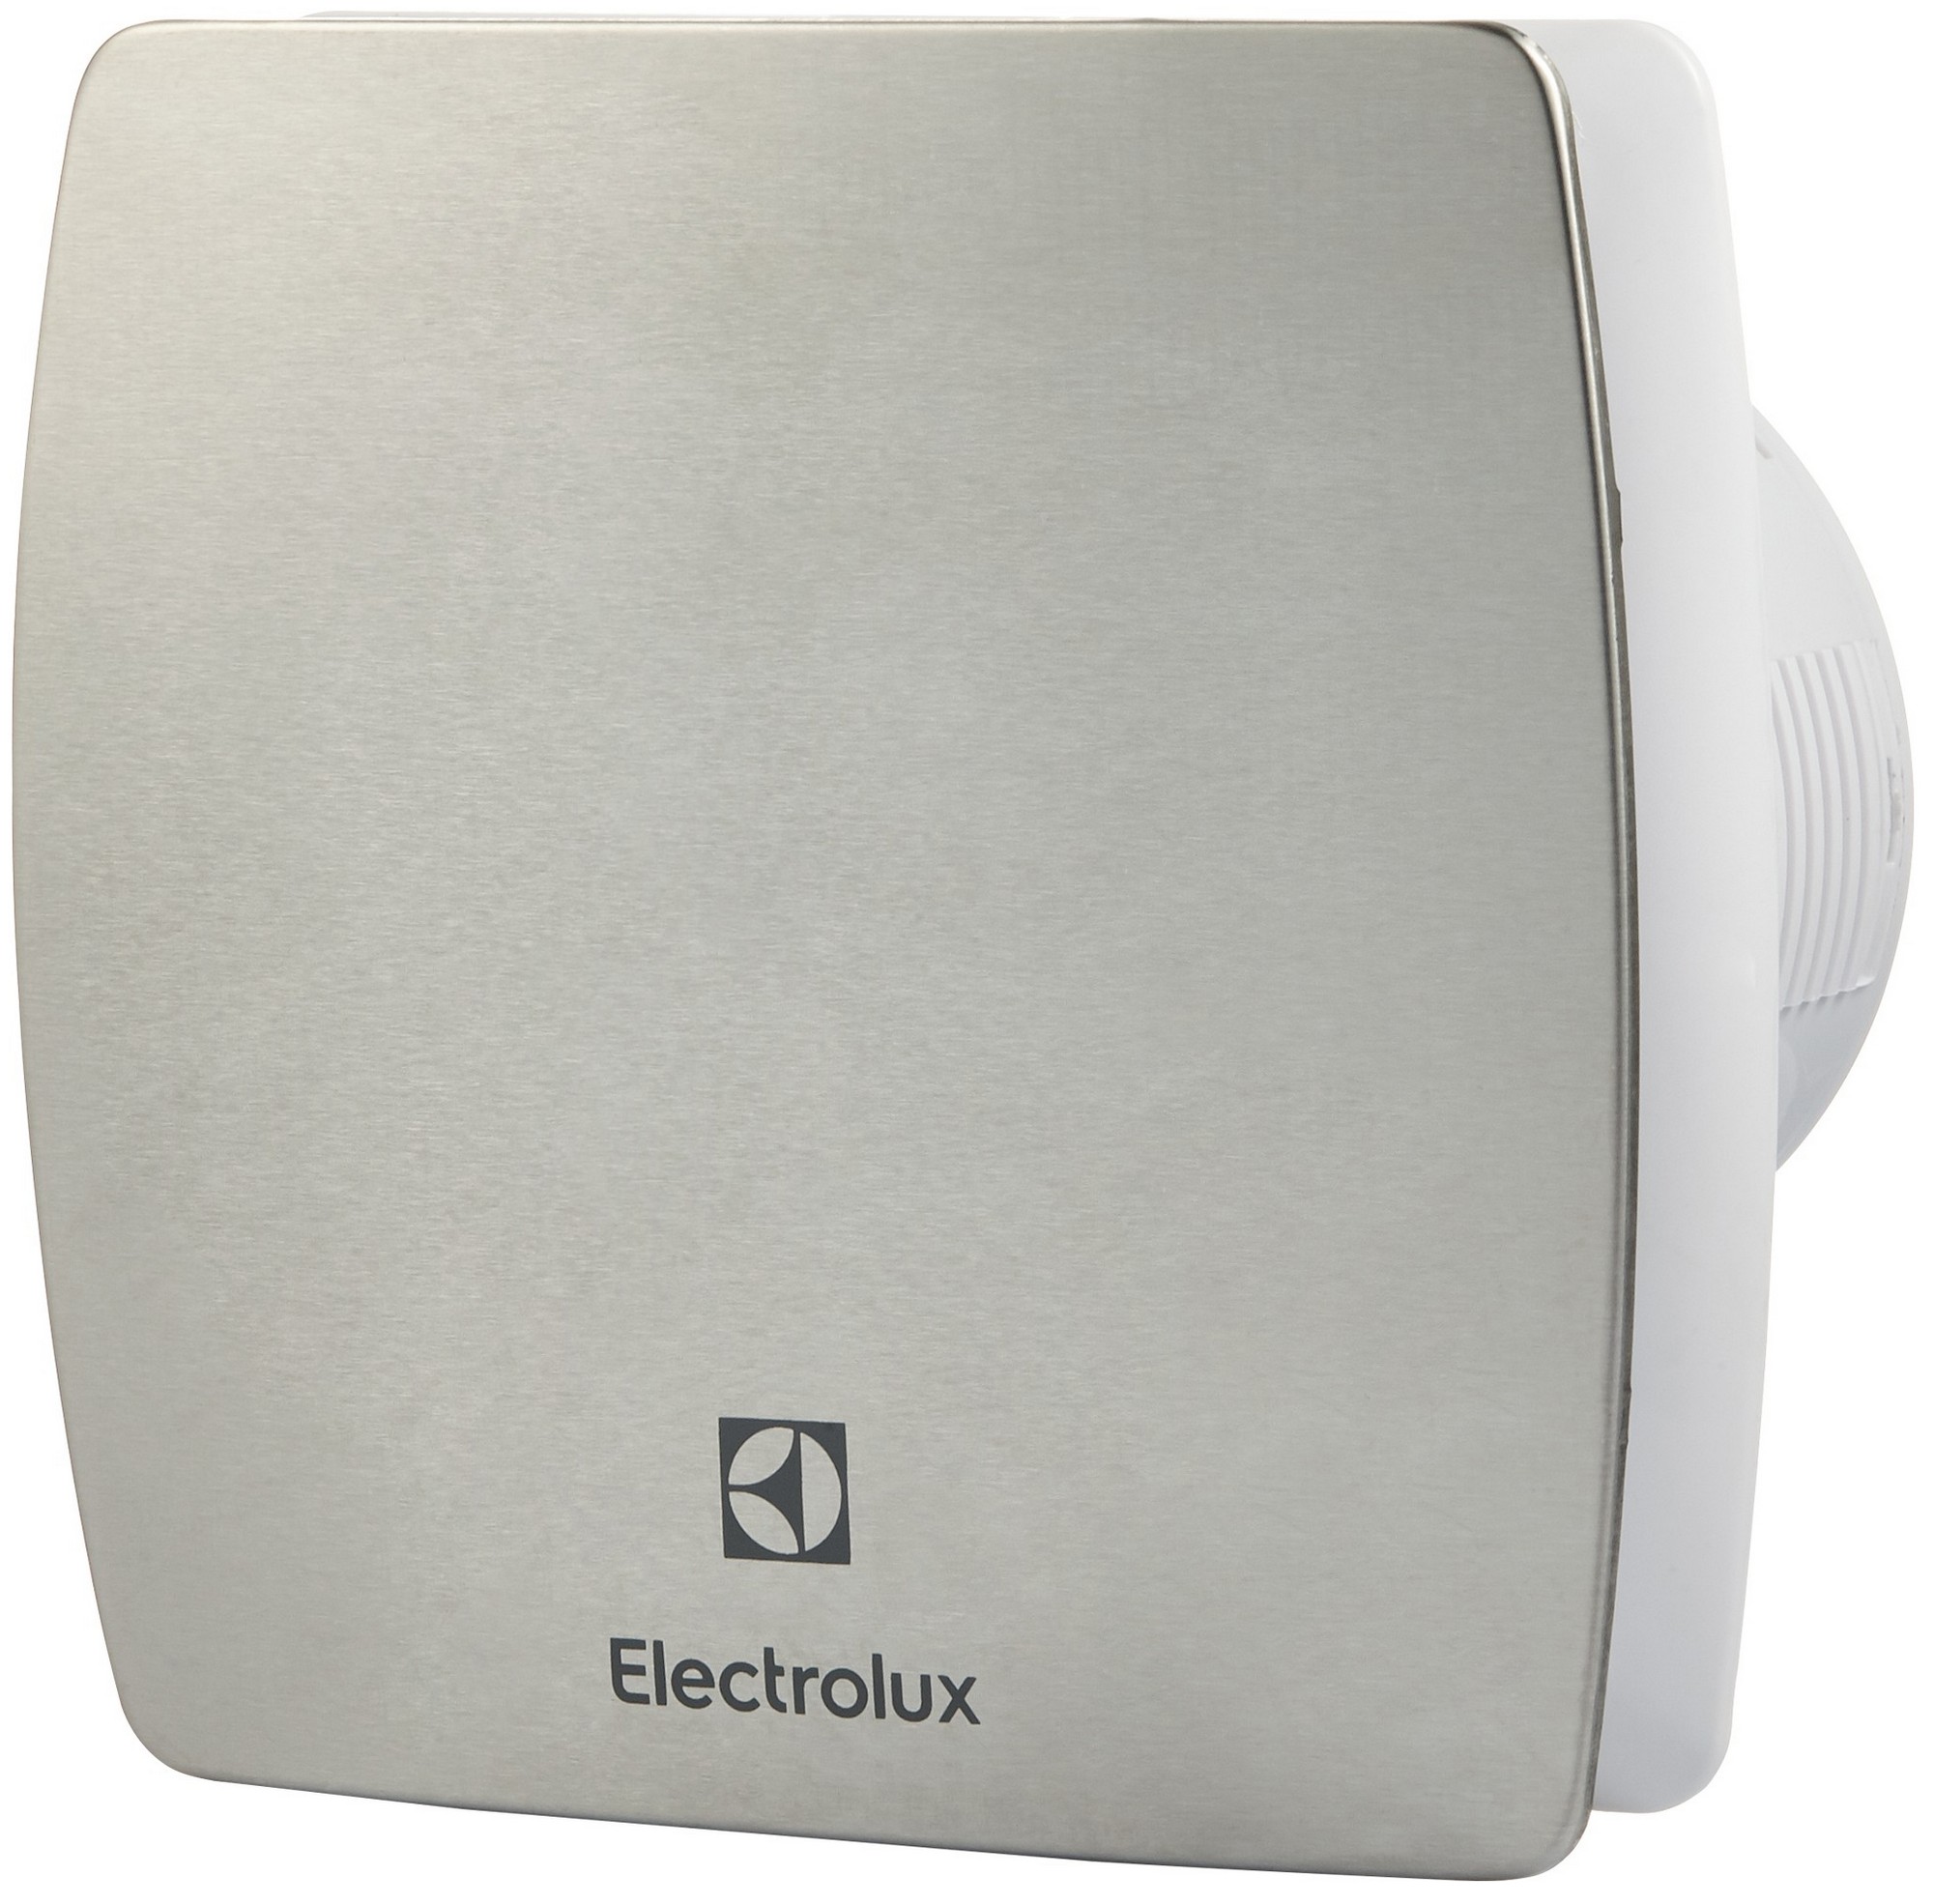 Вентилятор Electrolux вытяжной Electrolux Argentum EAFA-100TH